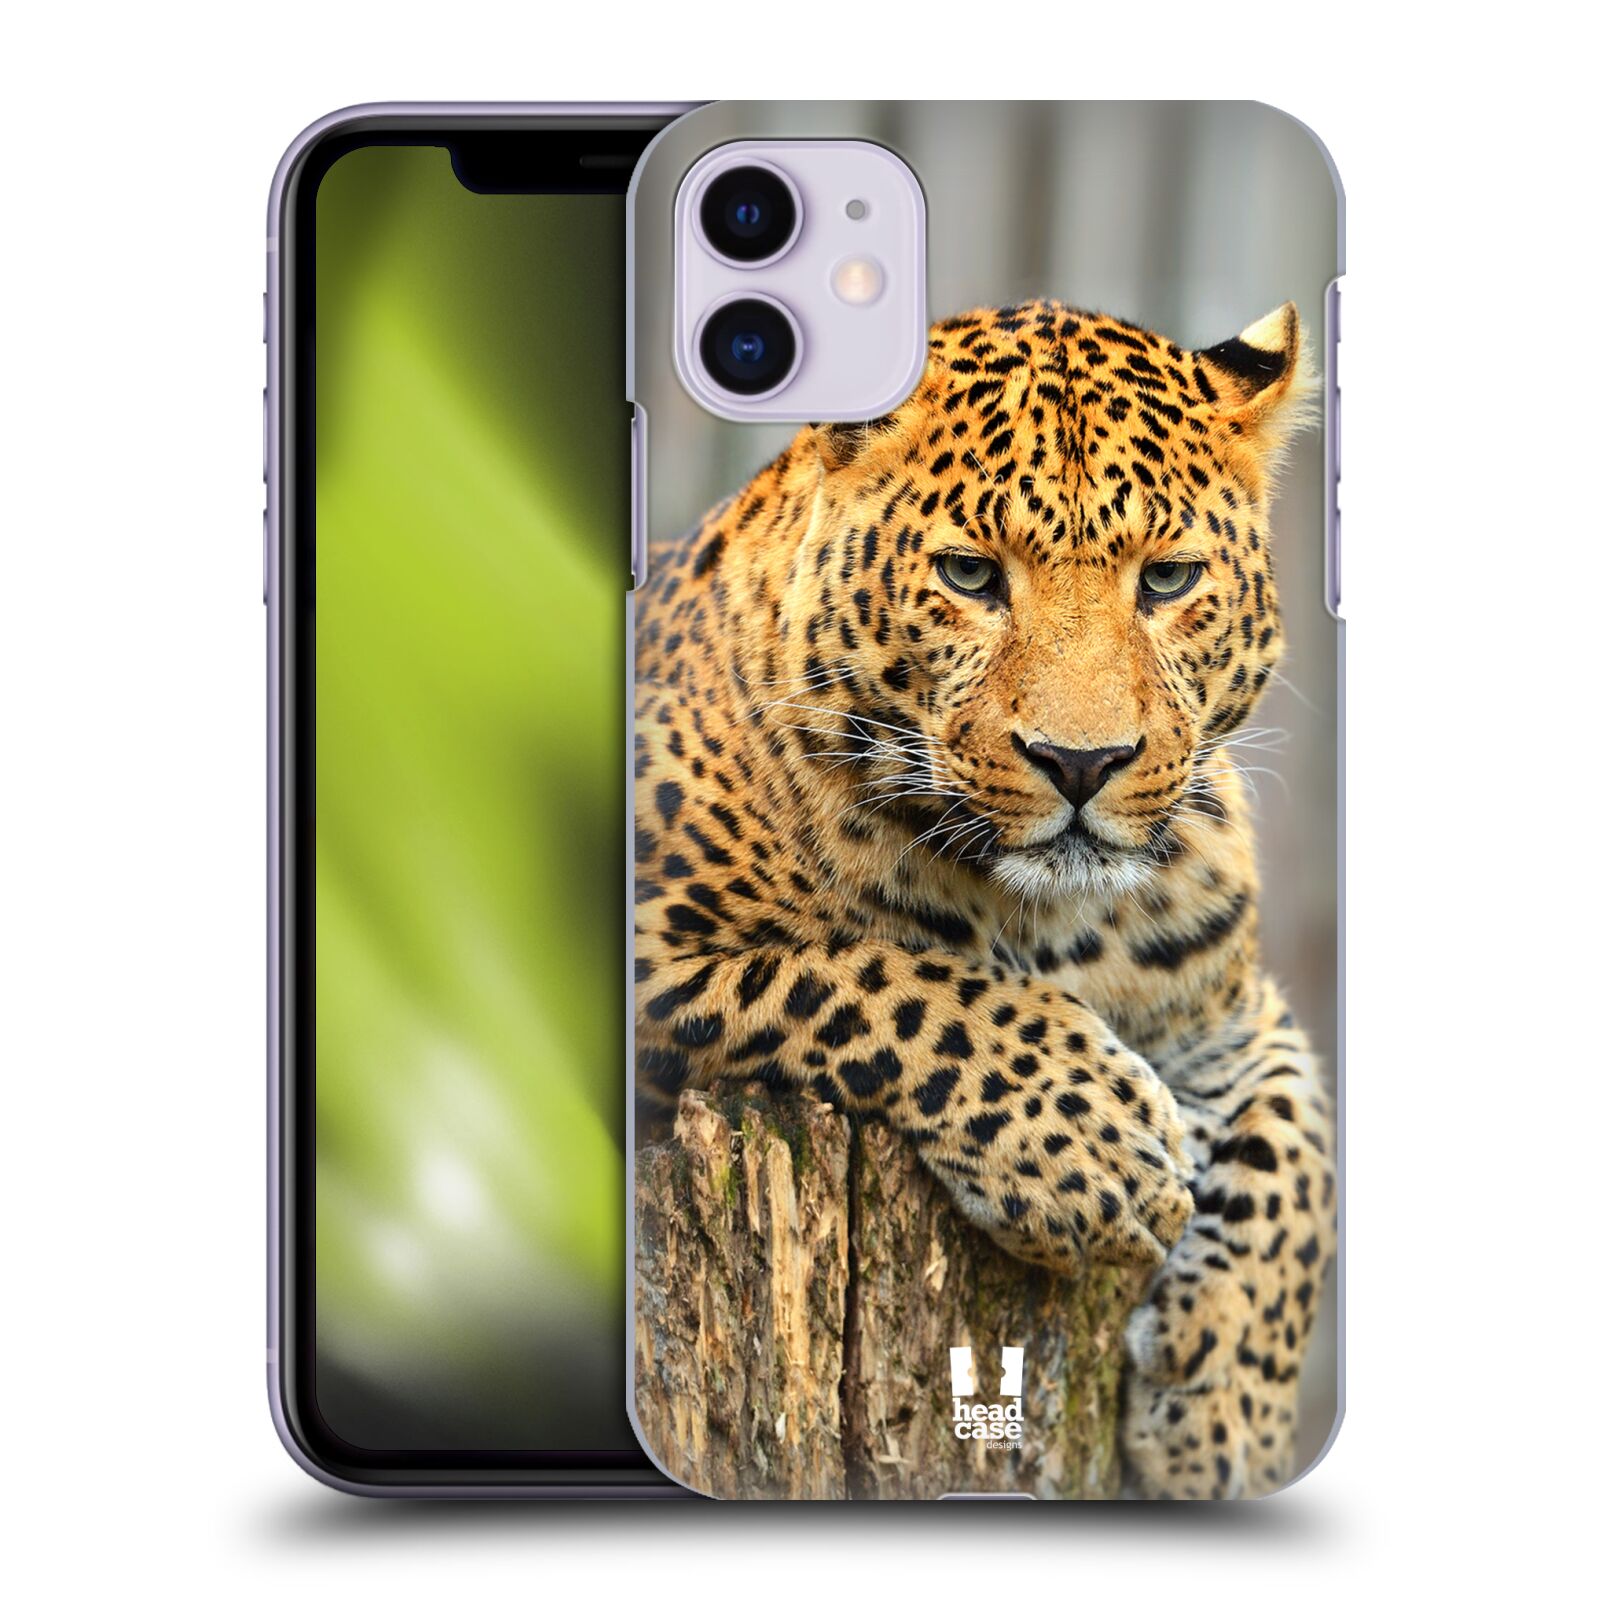 Pouzdro na mobil Apple Iphone 11 - HEAD CASE - vzor Divočina, Divoký život a zvířata foto LEOPARD PORTRÉT